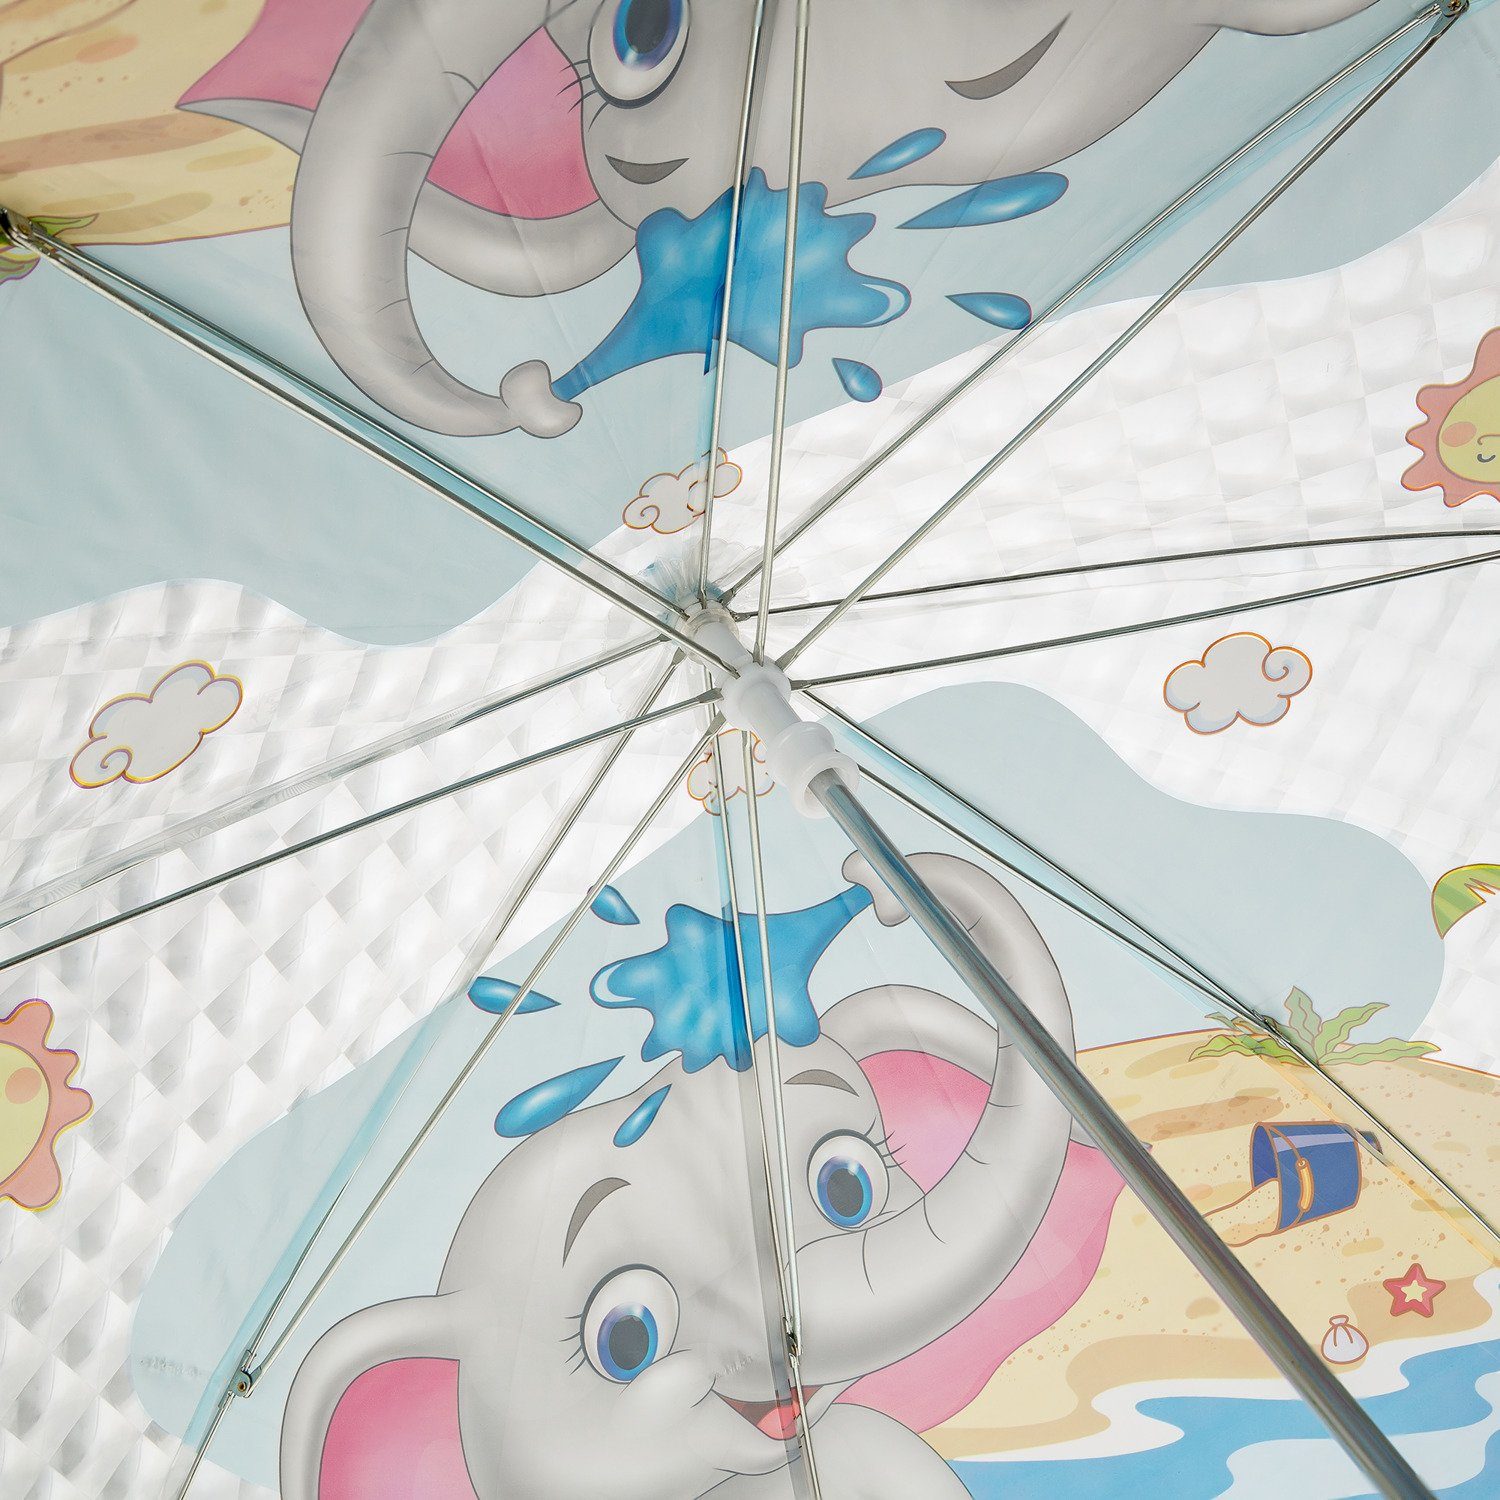 Idena - putzigem und mit Taschenregenschirm Kinderregenschirm 50046 für Jungen Mädchen, Idena